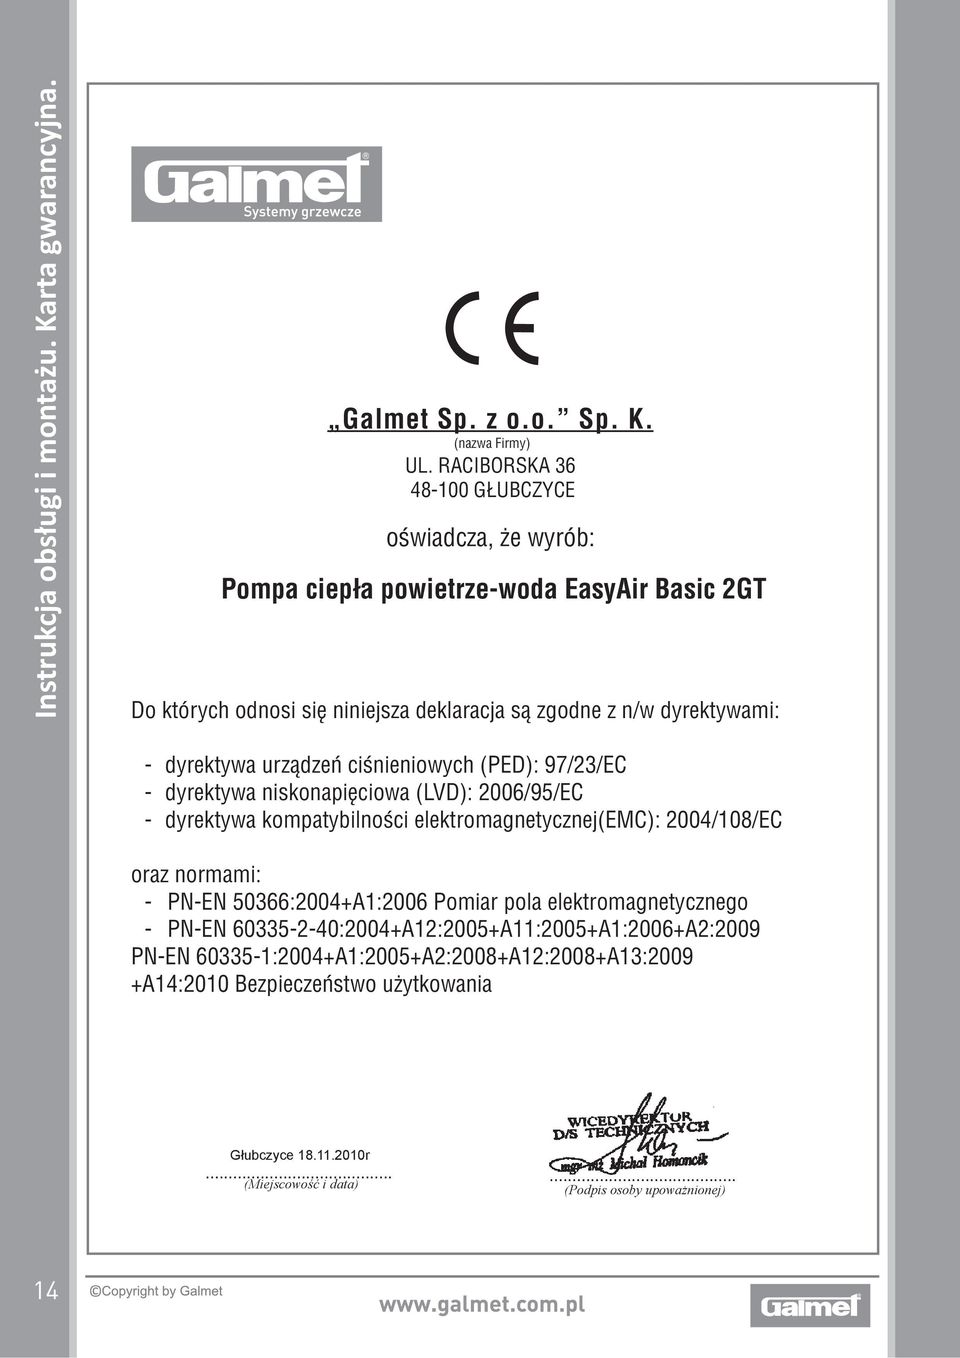 z n/w dyrektywami: - dyrektywa urządzeń ciśnieniowych (PED): 97/23/EC - dyrektywa niskonapięciowa (LVD): 2006/95/EC - dyrektywa kompatybilności